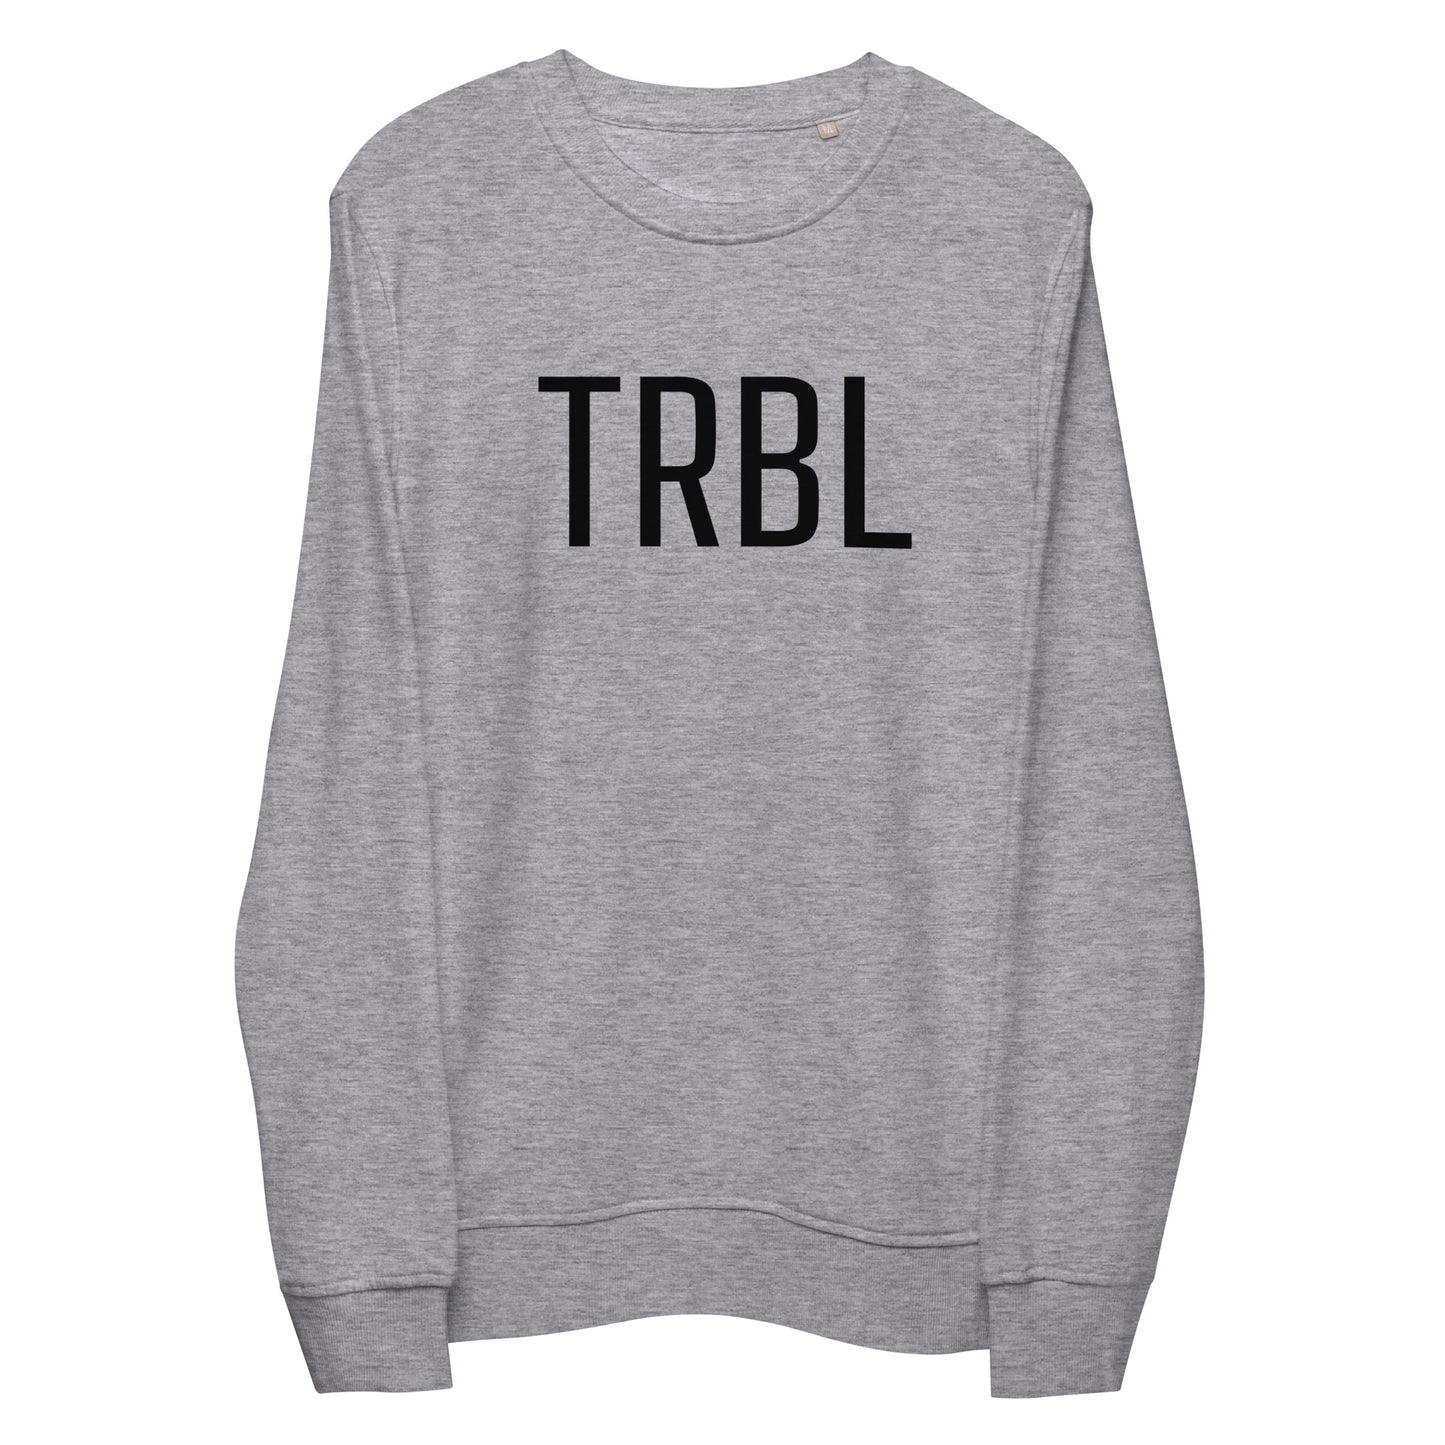 TRBL - Unisex Organic Sweatshirt